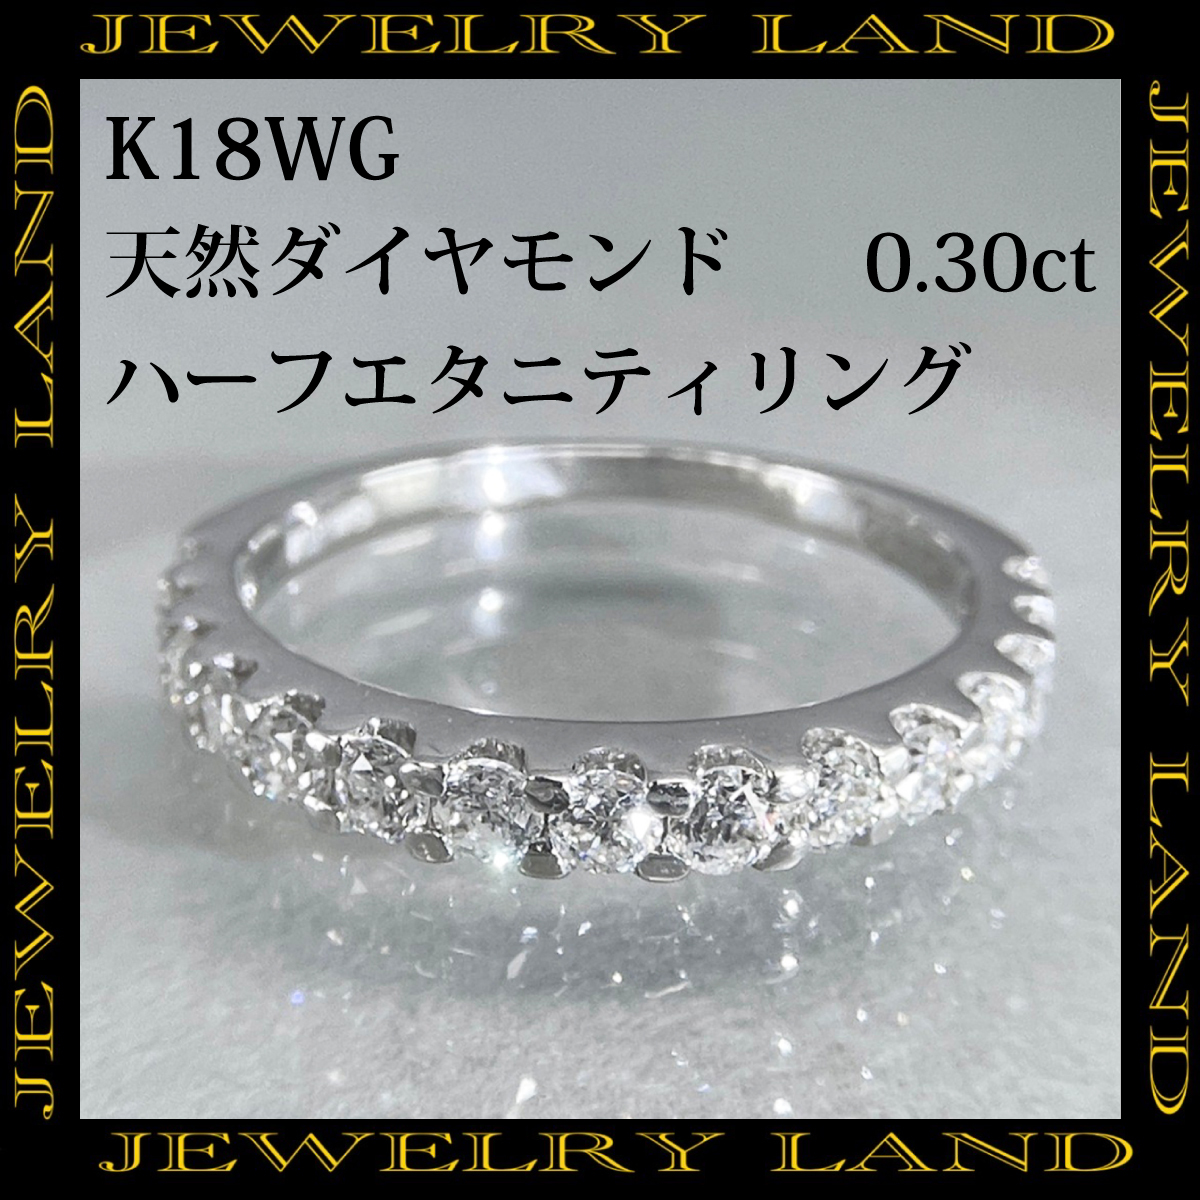 K18wg 天然ダイヤモンド 0.30ct ハーフエタニティリング_画像1